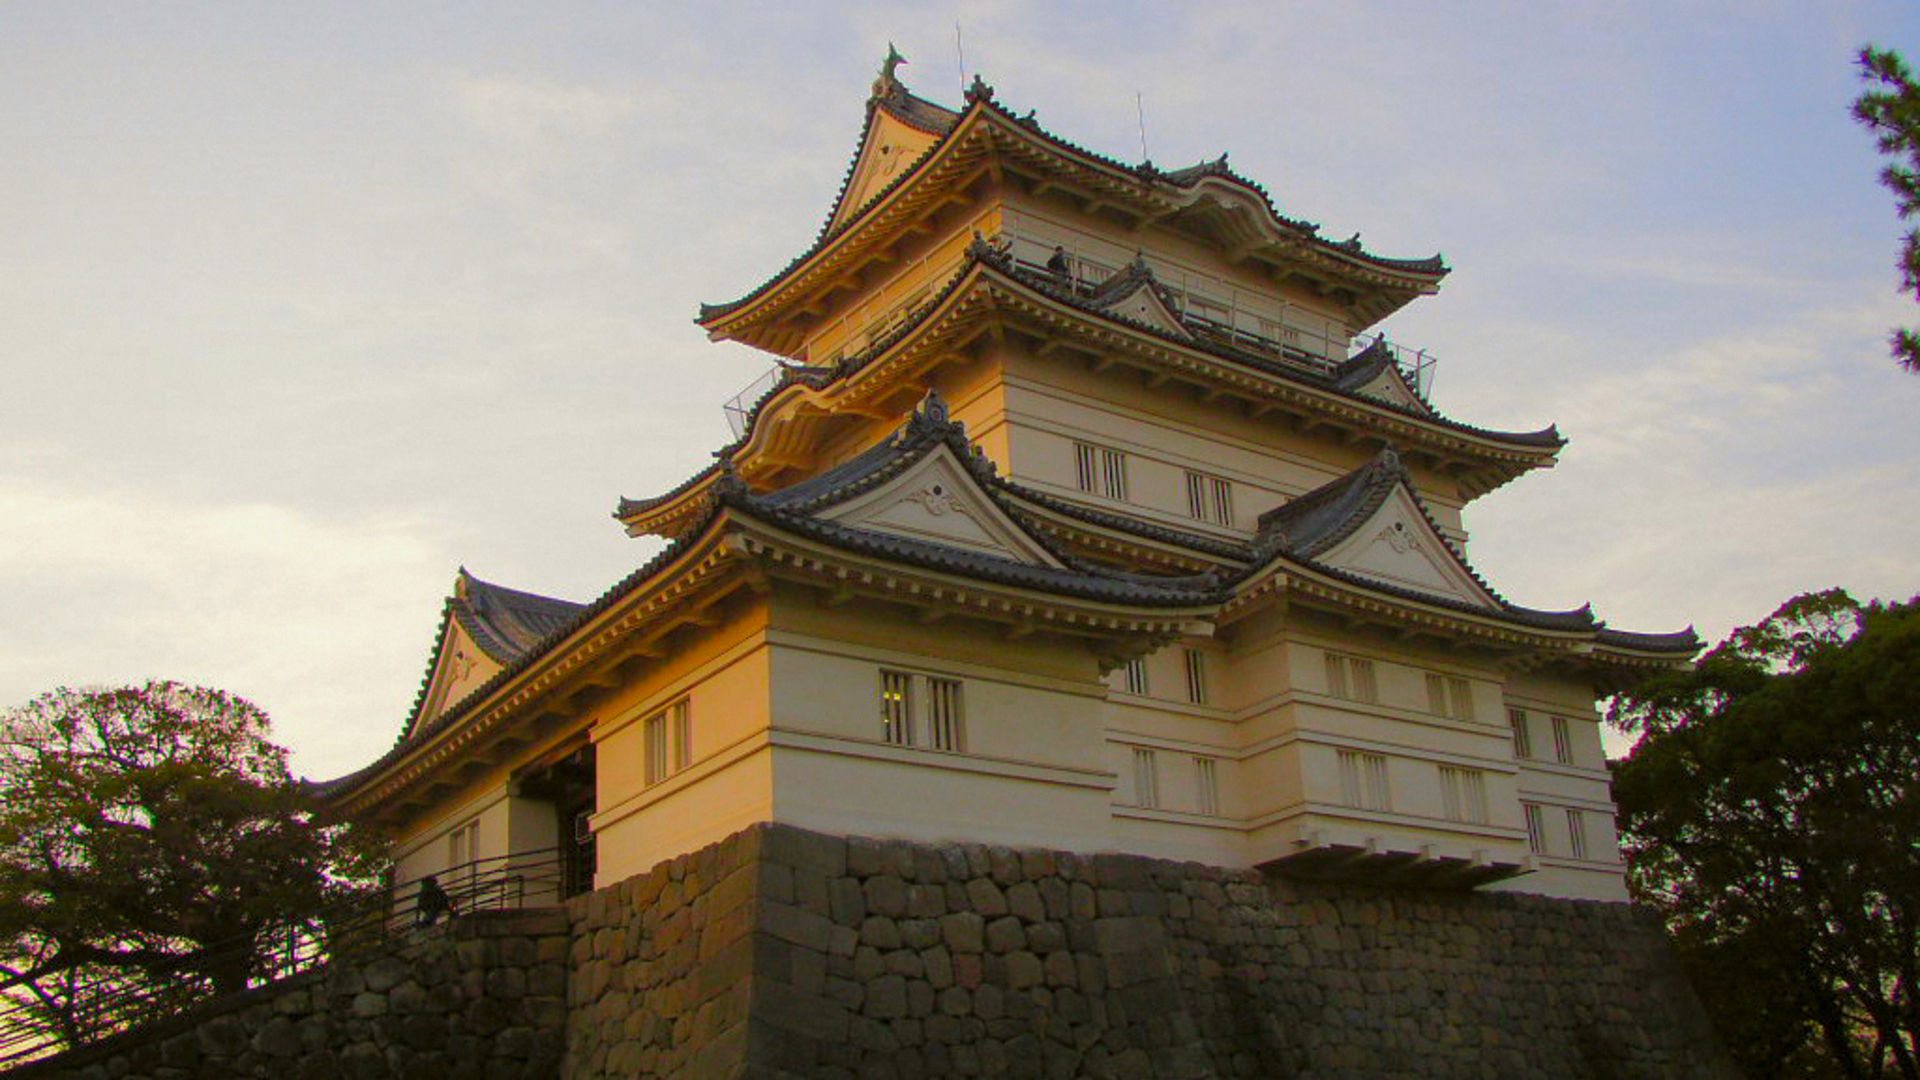 日本100名城第29番の松本城の国宝で現存最古の五重六階や見どころを徹底解説！スタンプ設置場所やアクセス、所要時間等もご紹介！